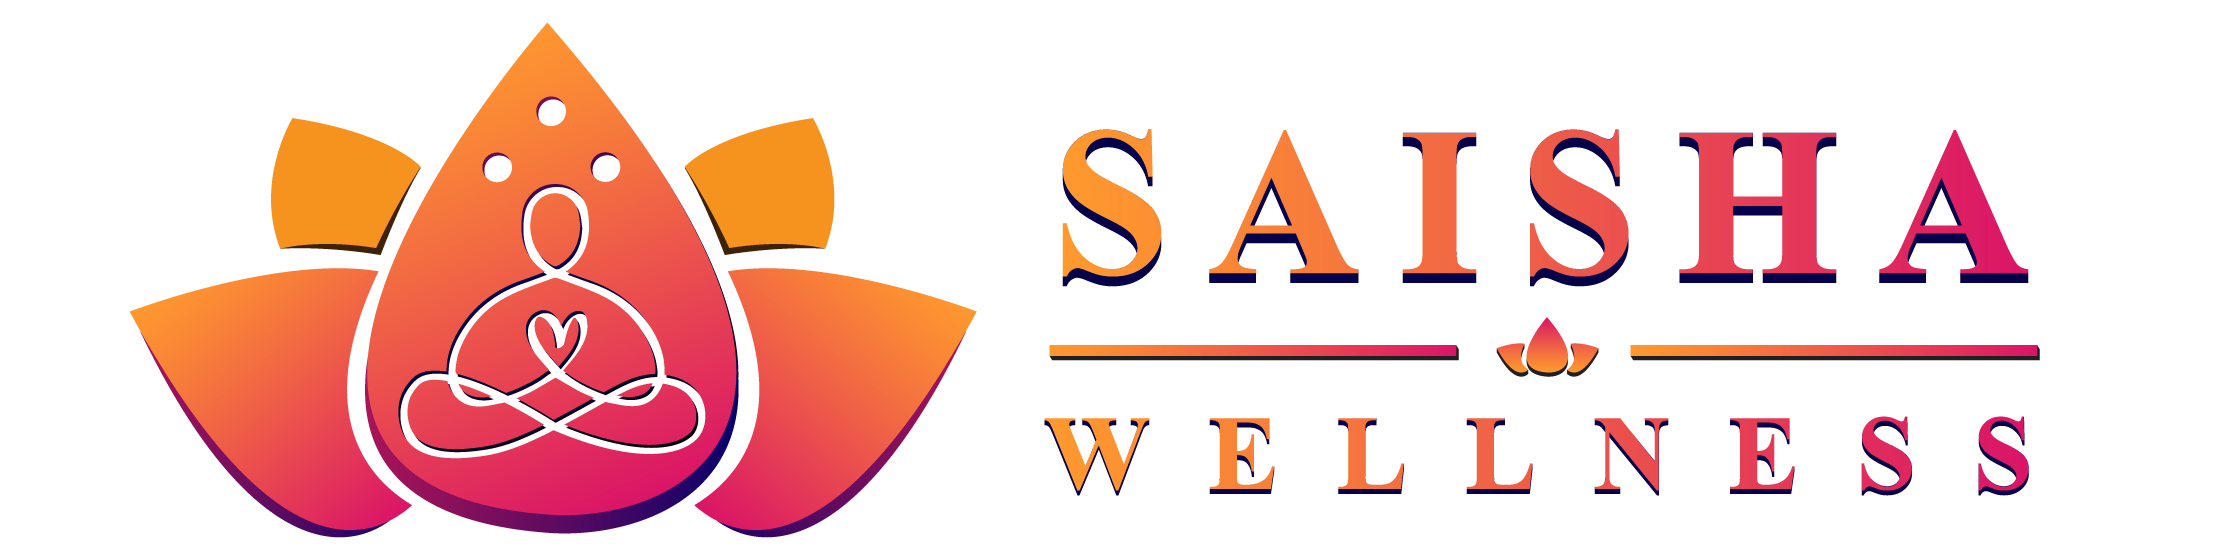 Saisha Wellness